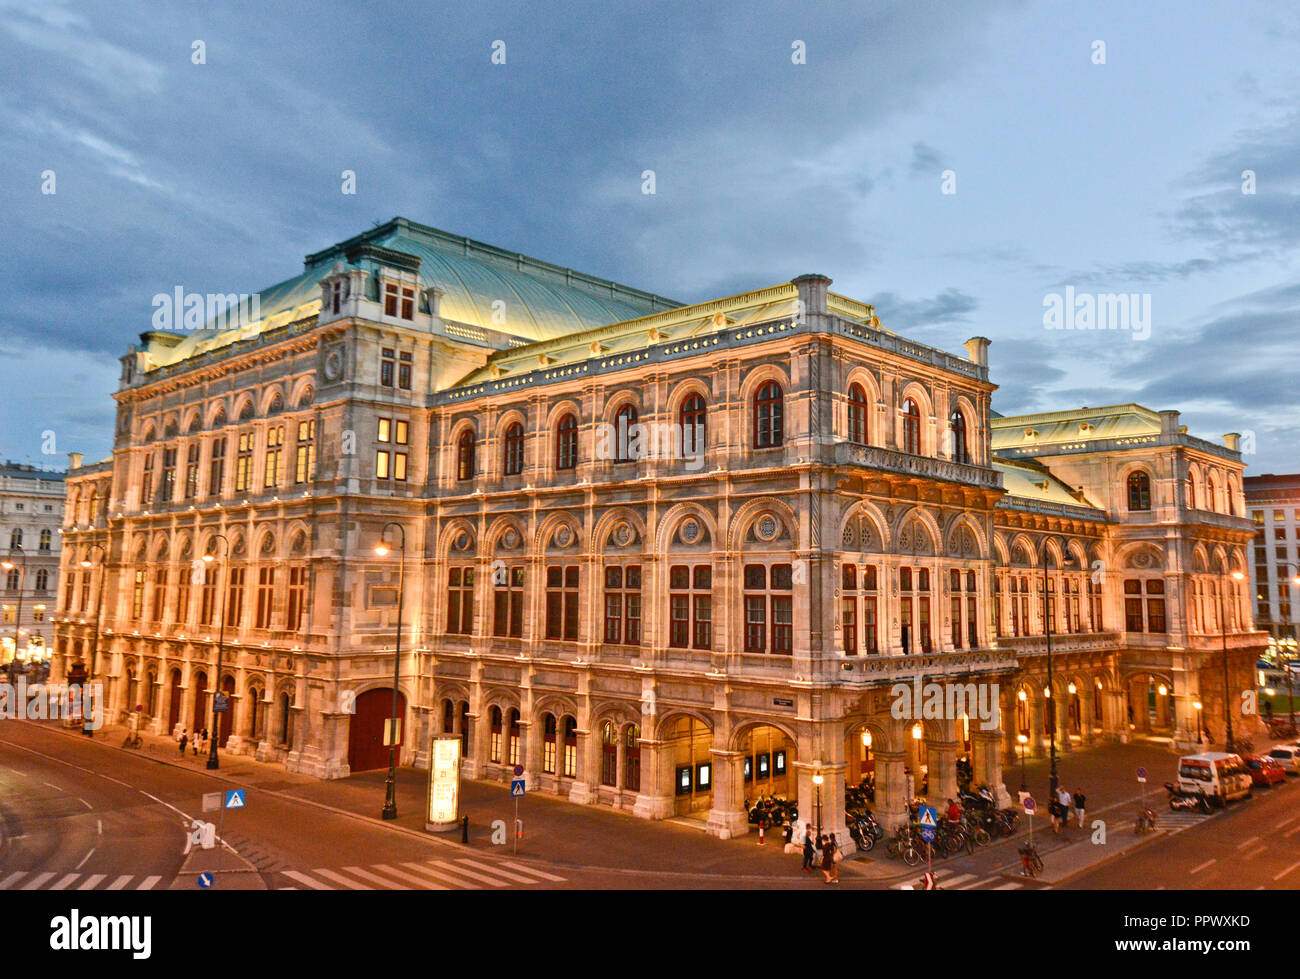 Opéra d'Etat de Vienne au crépuscule, Autriche Banque D'Images